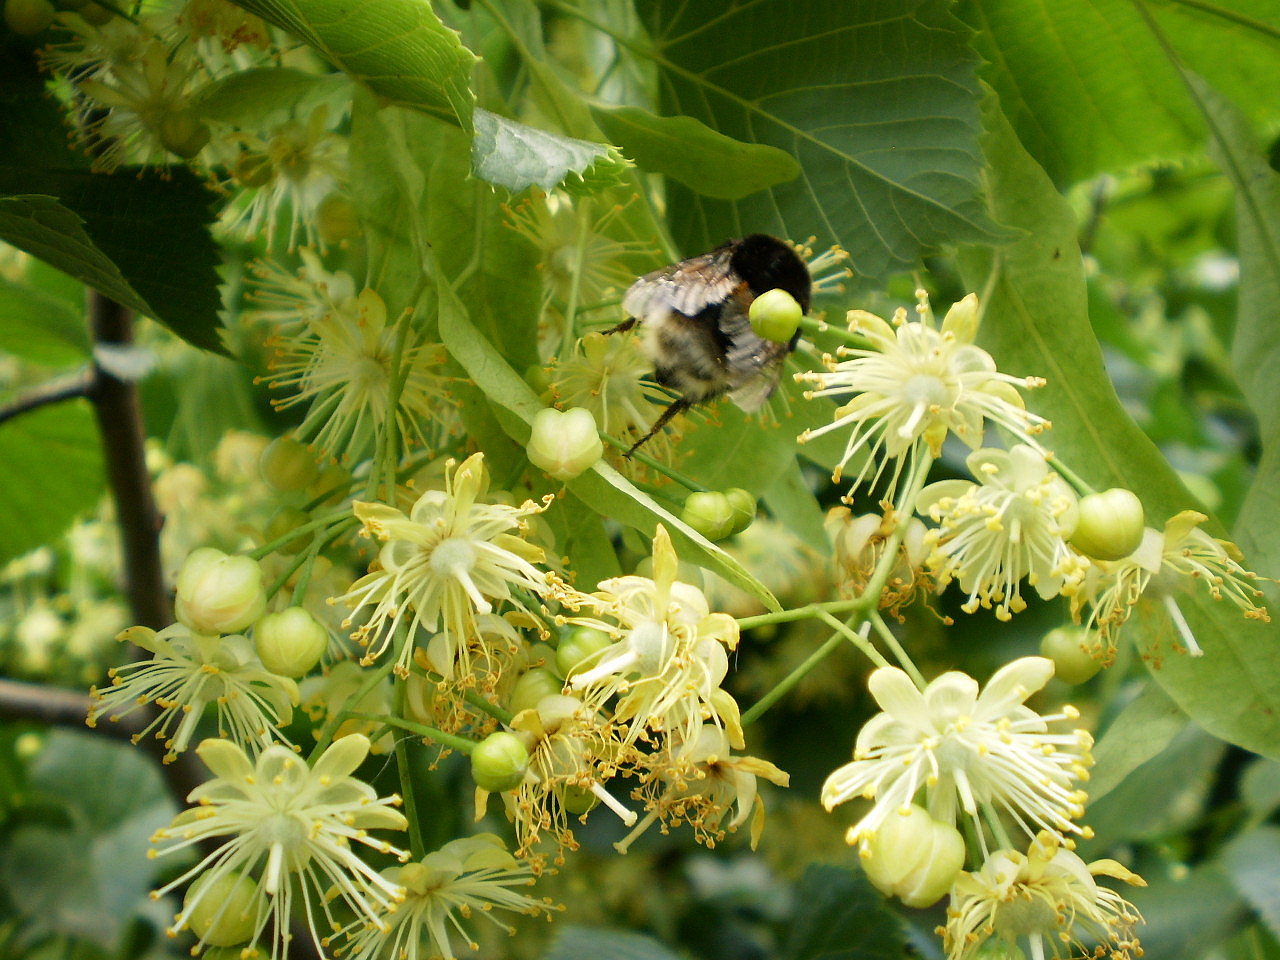 В Польше появятся медоносные лесопасадки в помощь пчеловодам